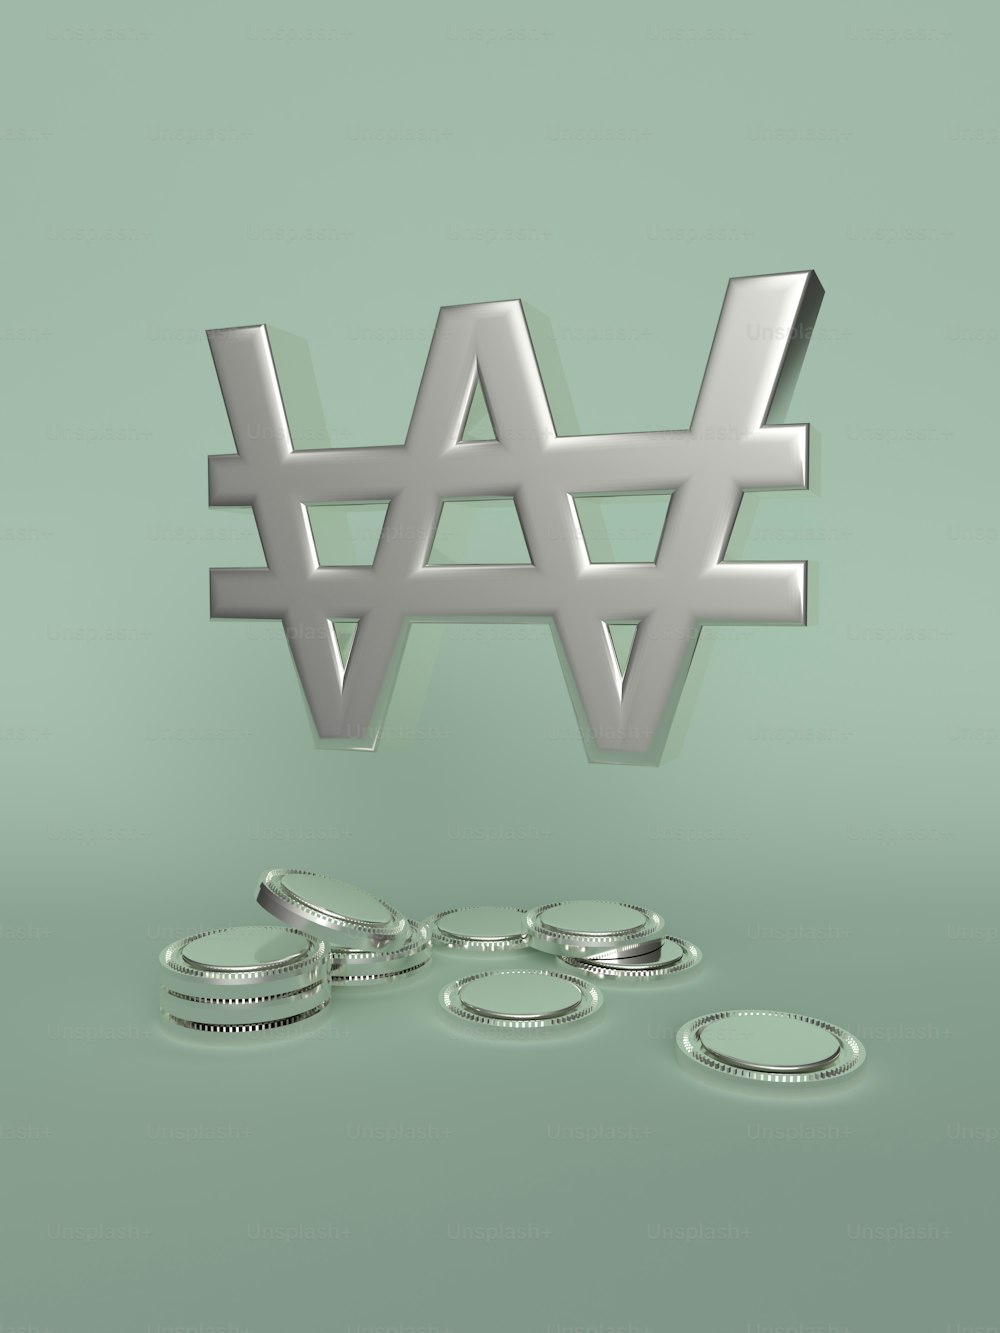 Una representación 3D de la palabra W y algunas monedas